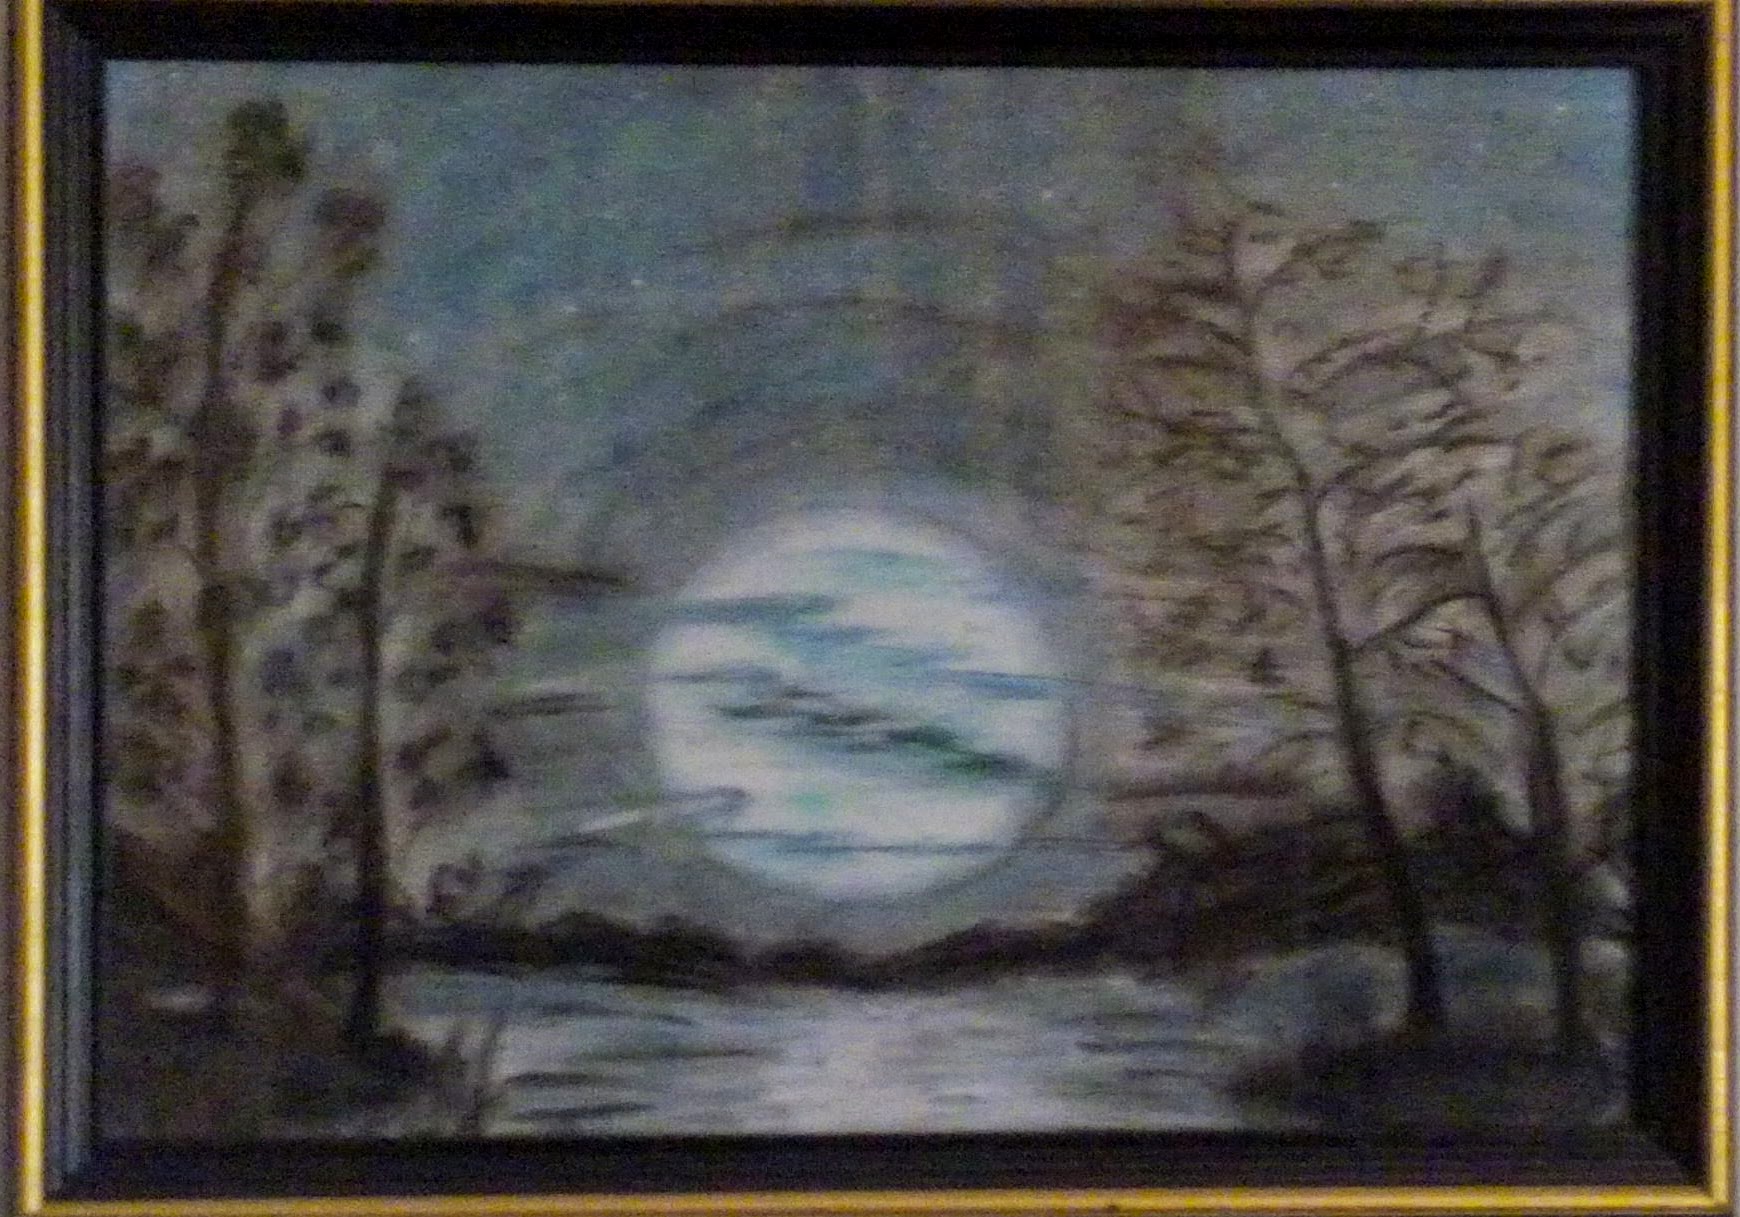 Luna pe lac - 2008